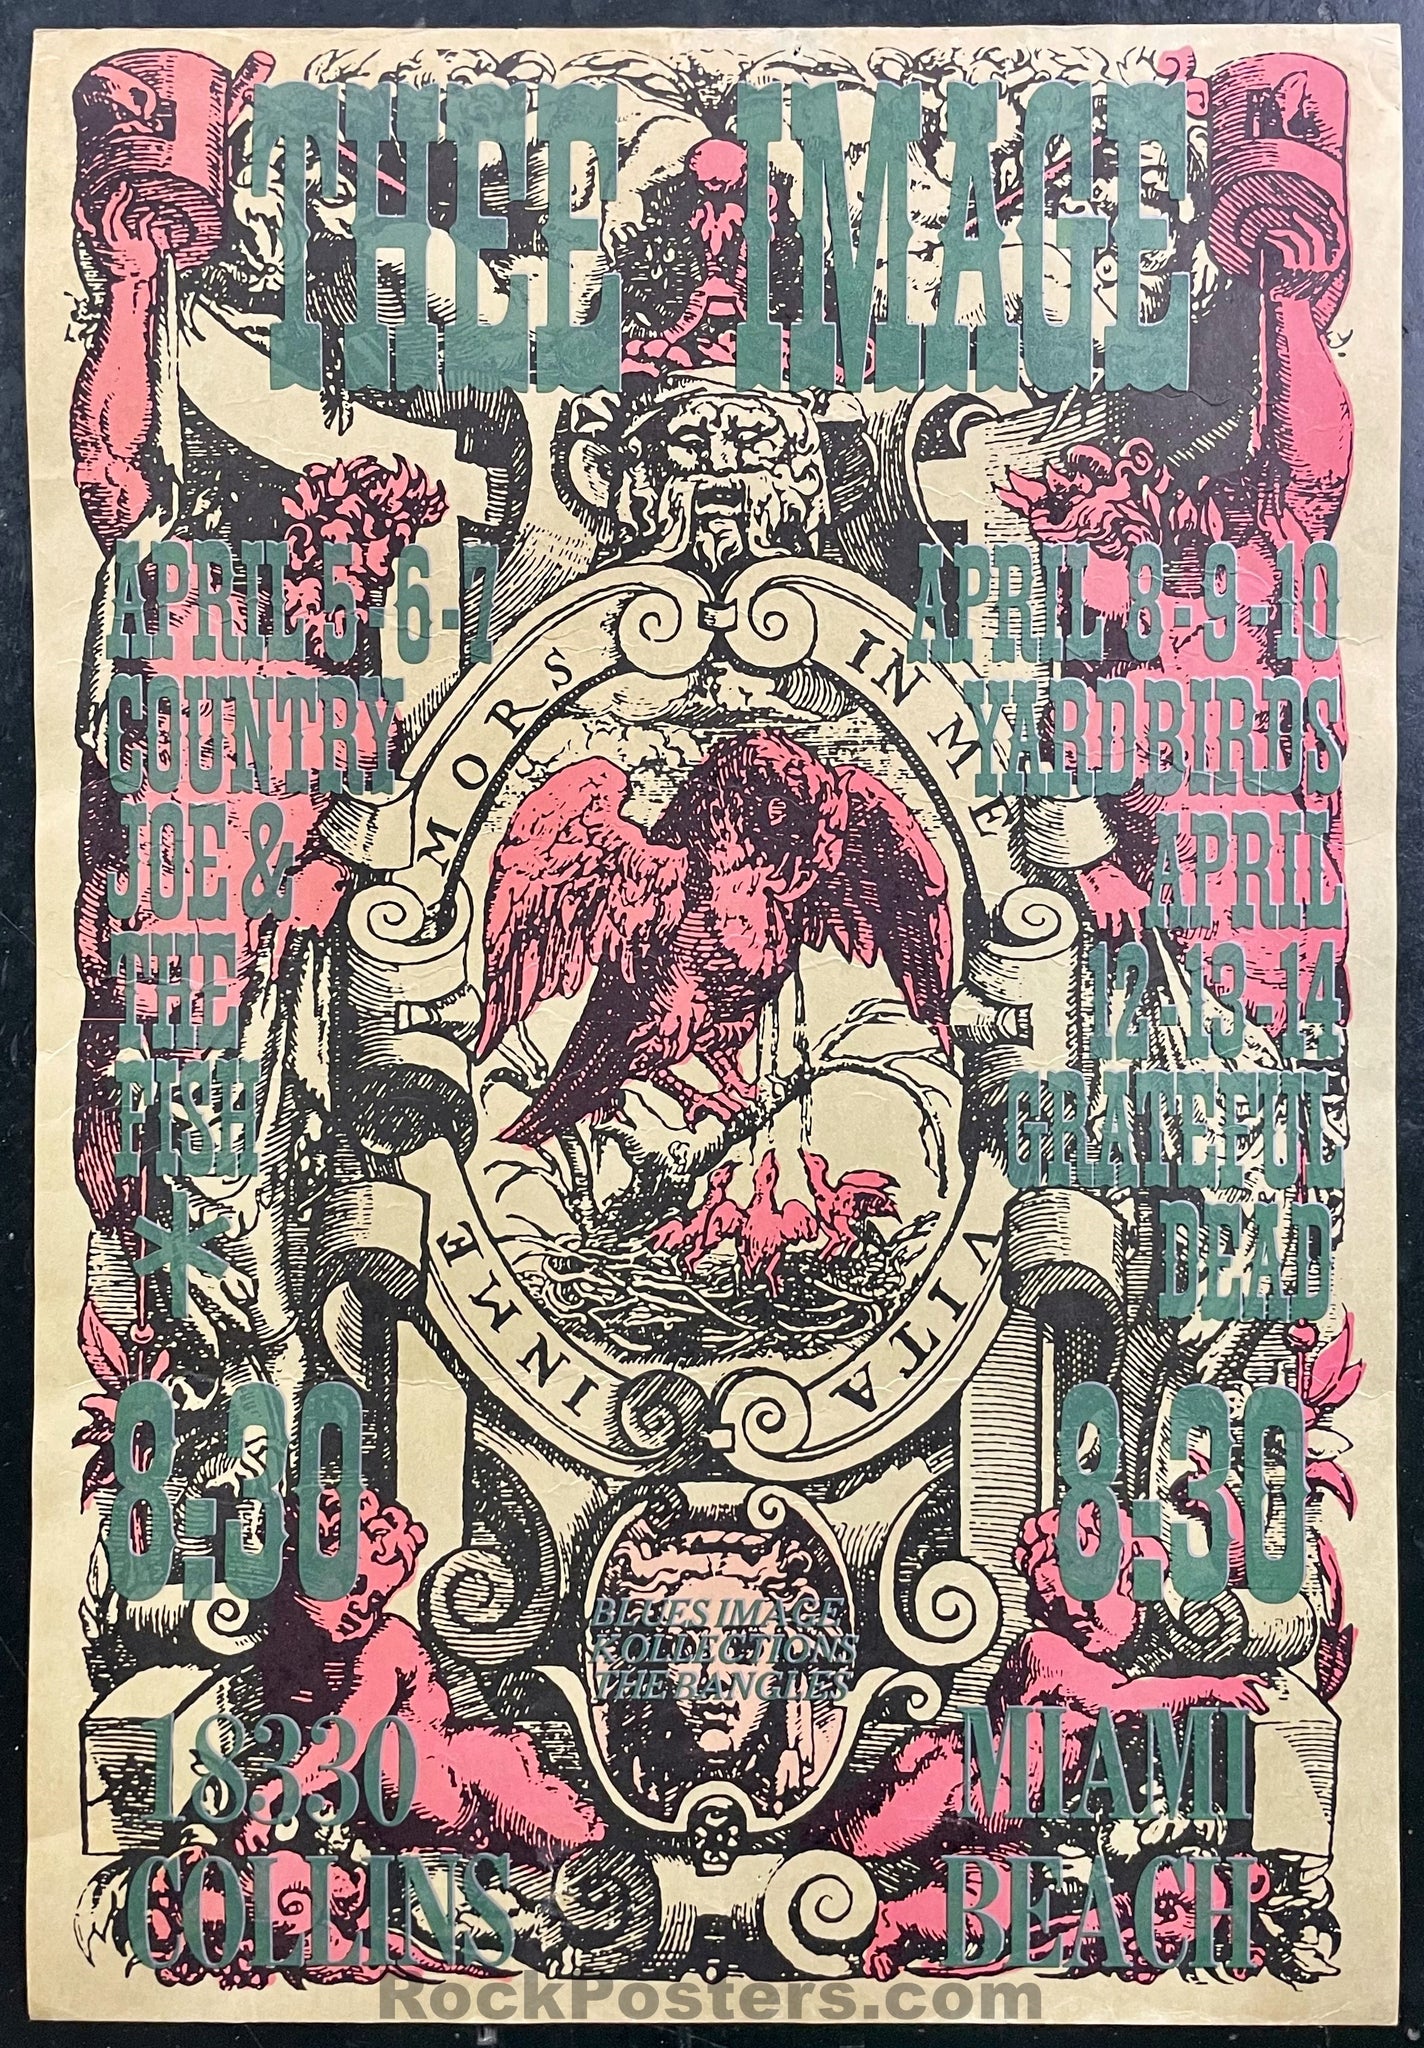 AUCTION - Grateful Dead - 1968 Poster - Miami Florida - Excellent